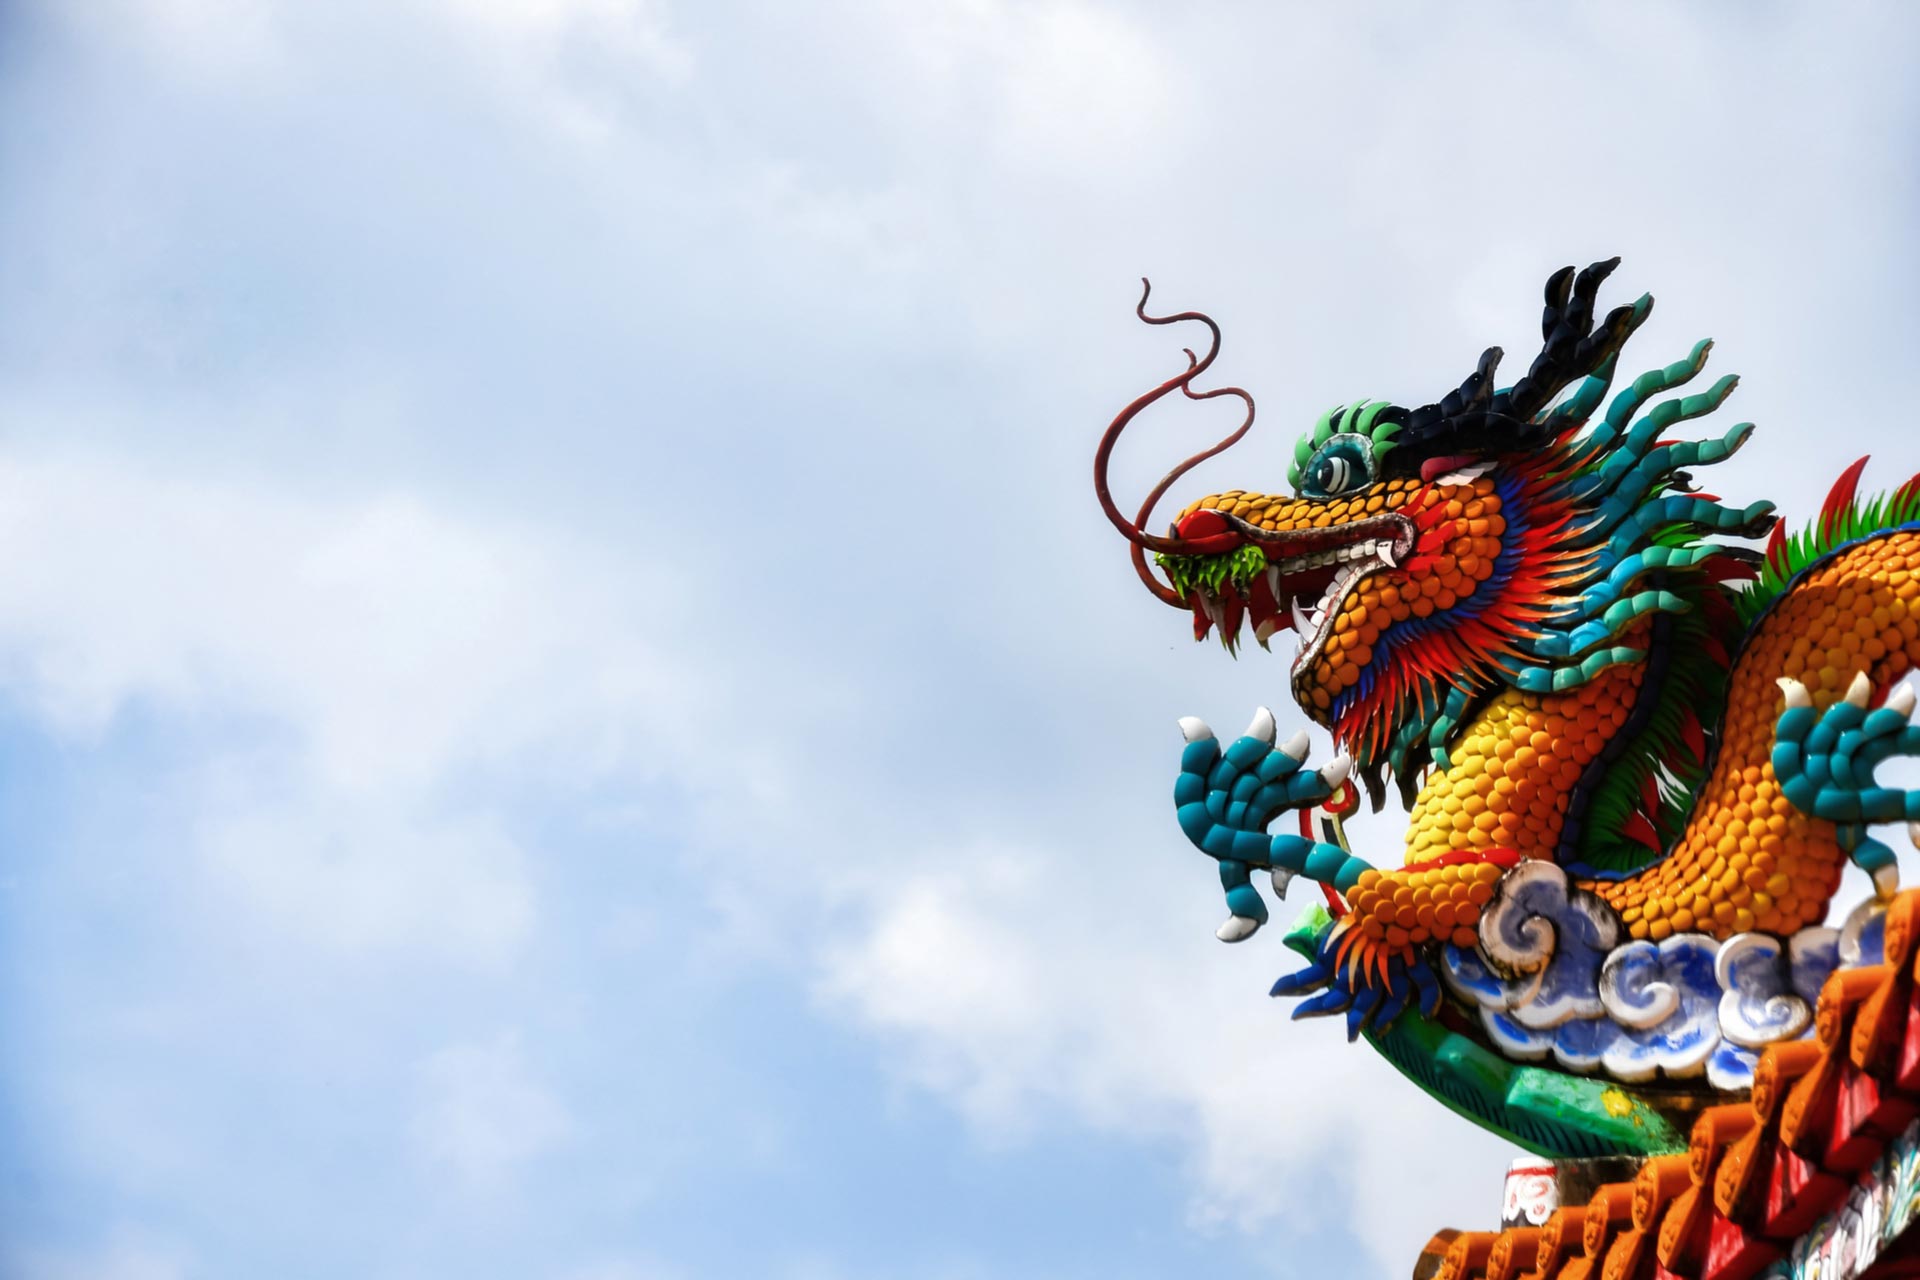 Macro Dragon: China’s back, Coronavirus, “The Bern"